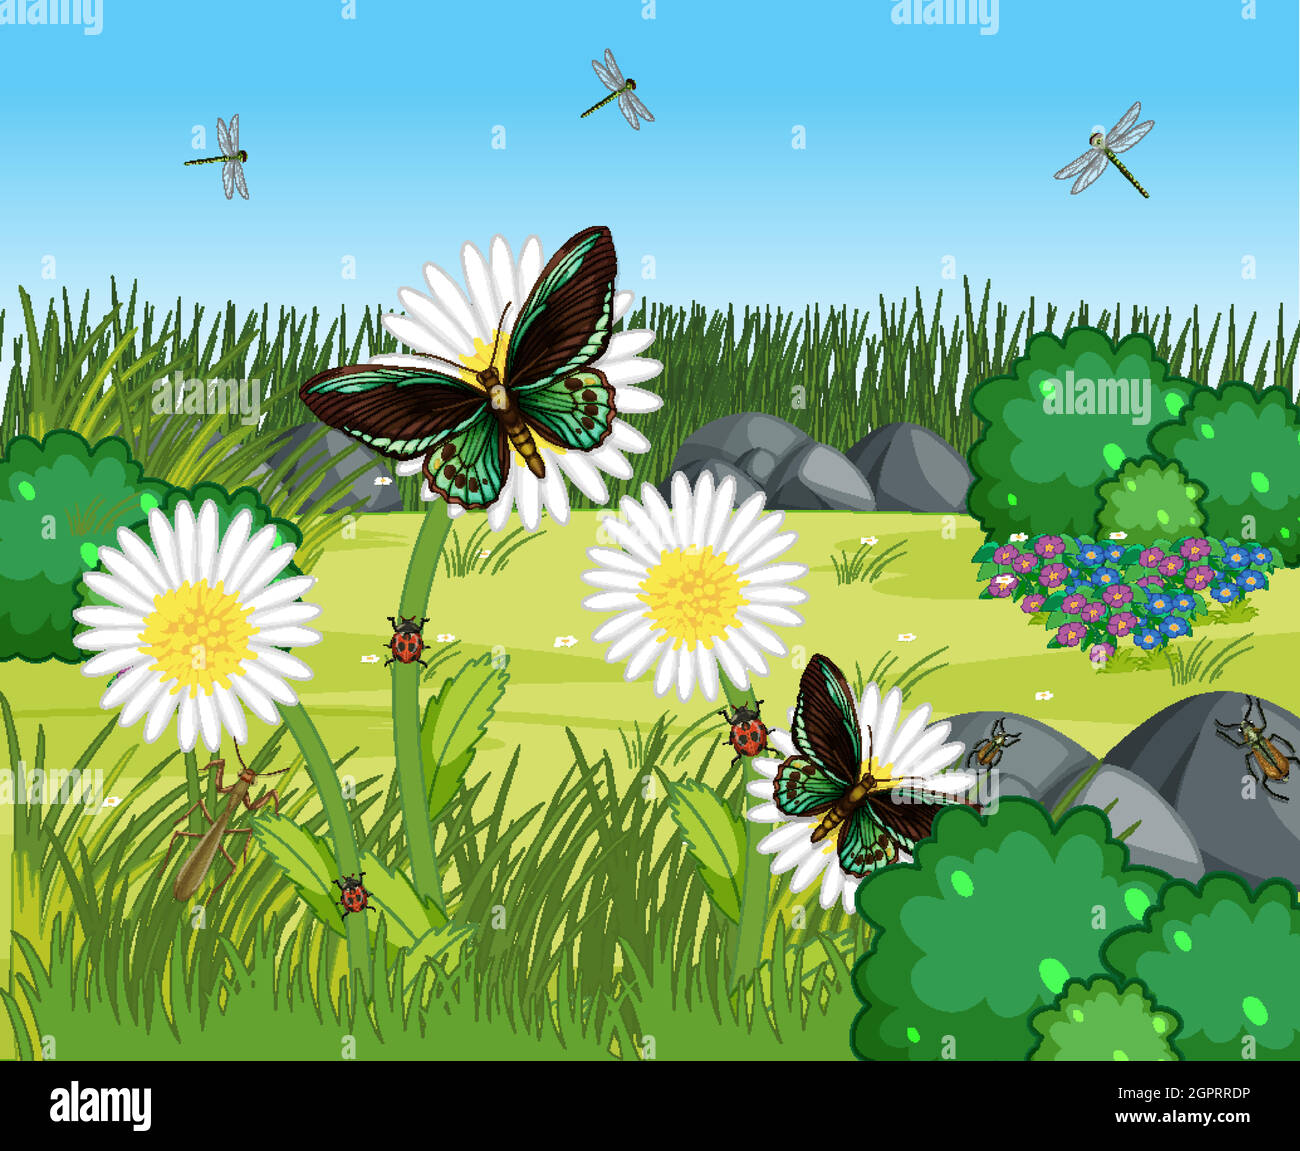 Beaucoup de papillons avec beaucoup de fleurs dans la scène de jardin Illustration de Vecteur